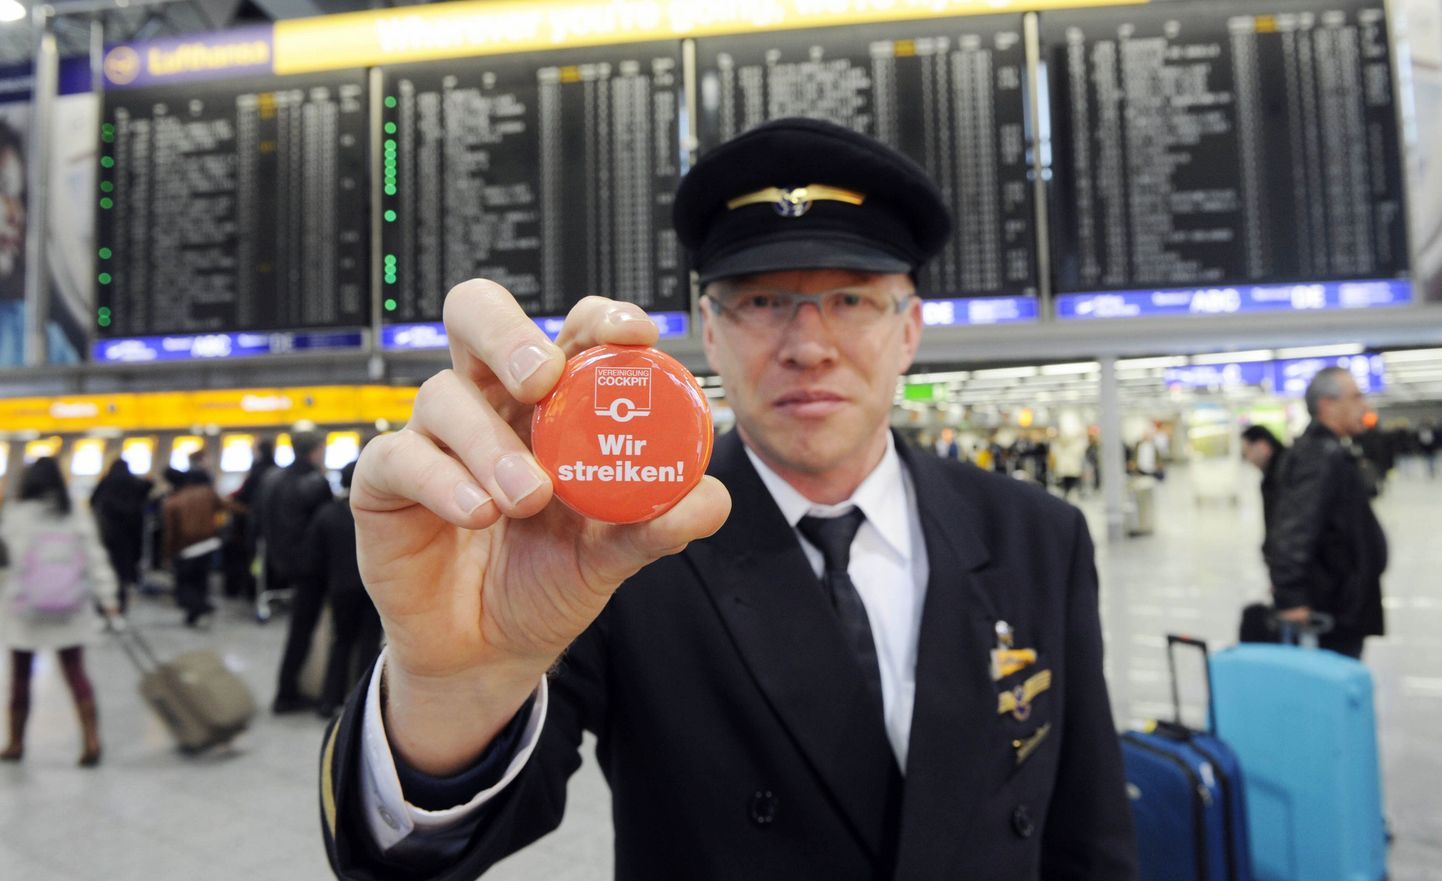 Пилот Lufthnsa Эрнст ван Корт показывает значок с надписью "Мы бастуем".